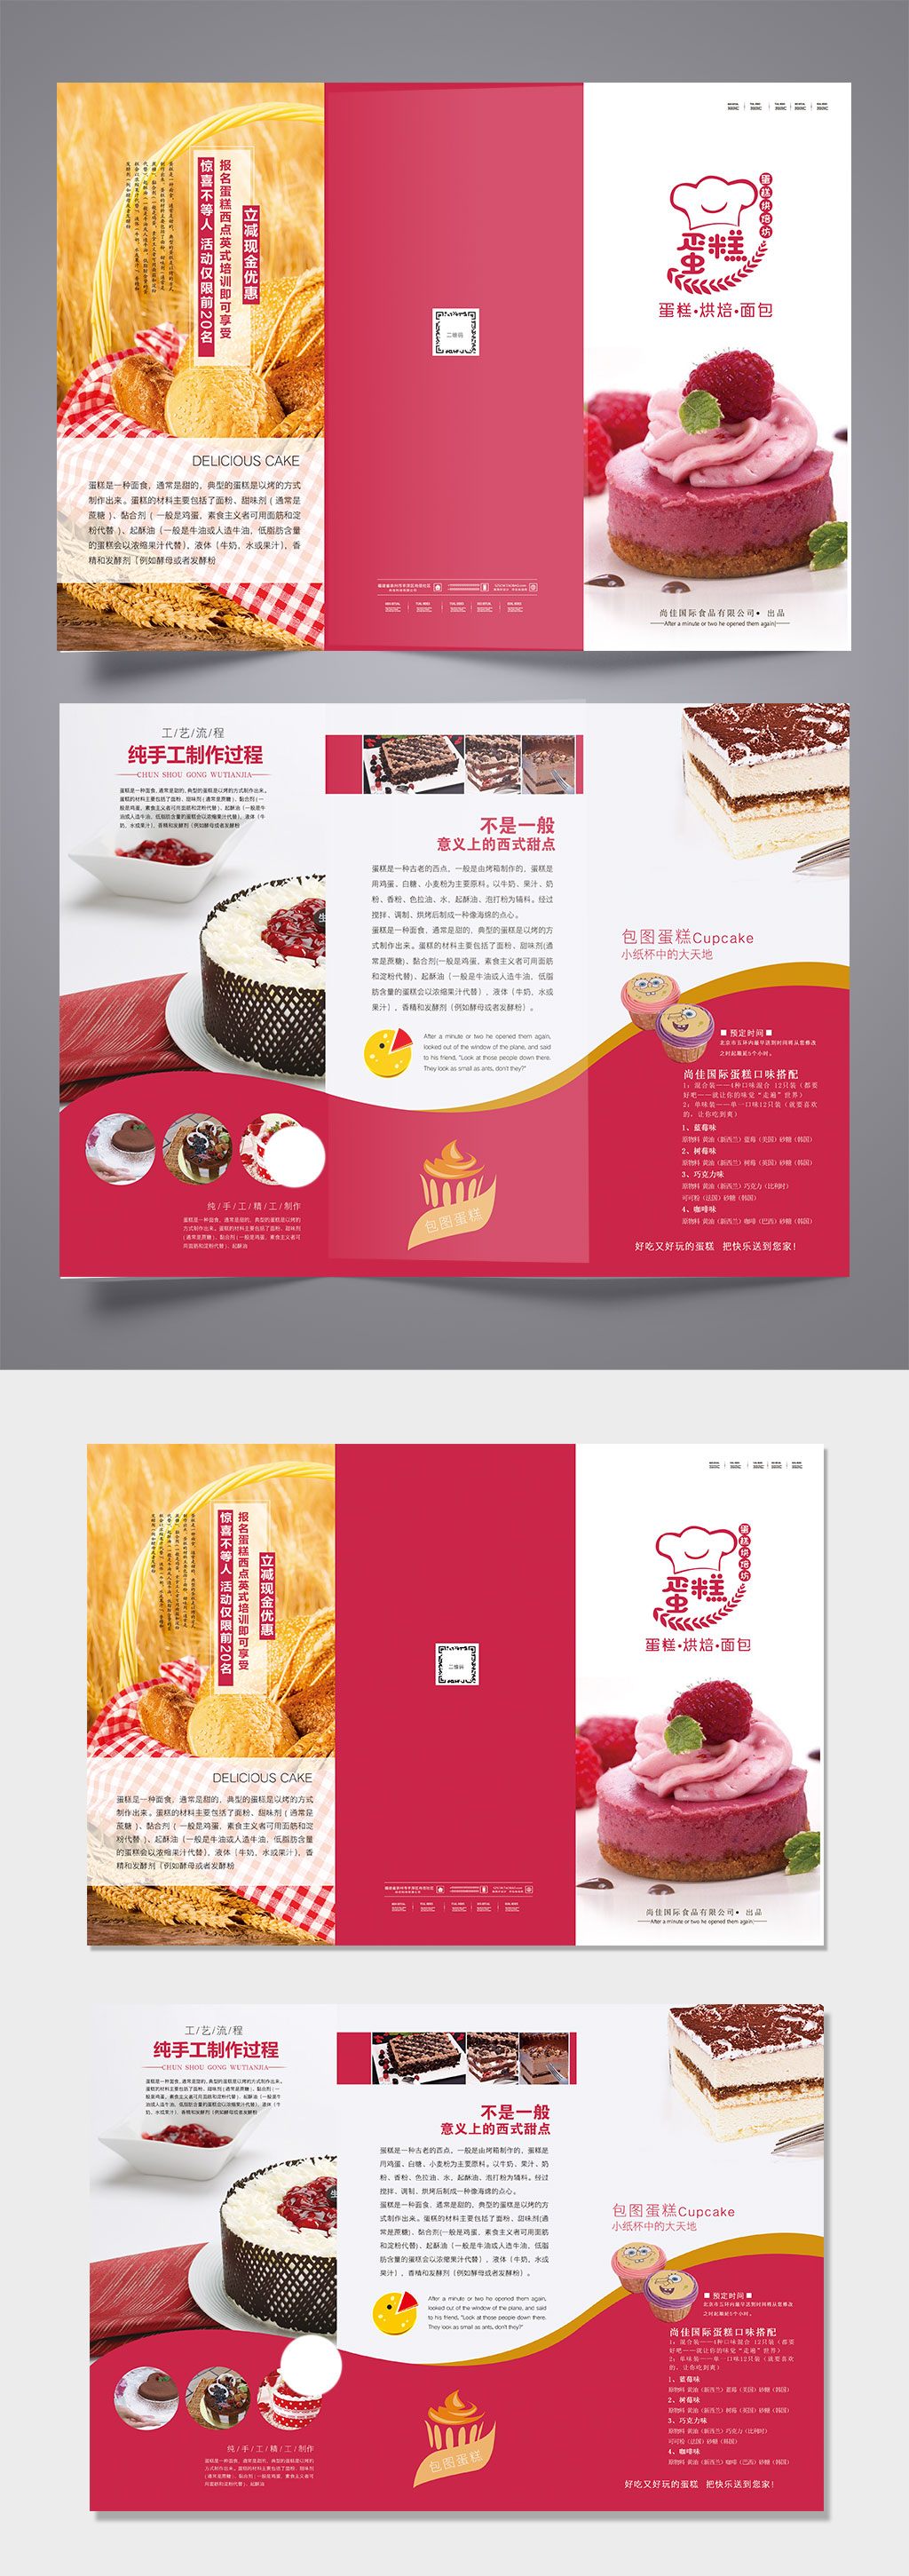 红色蛋糕甜品三折页设计